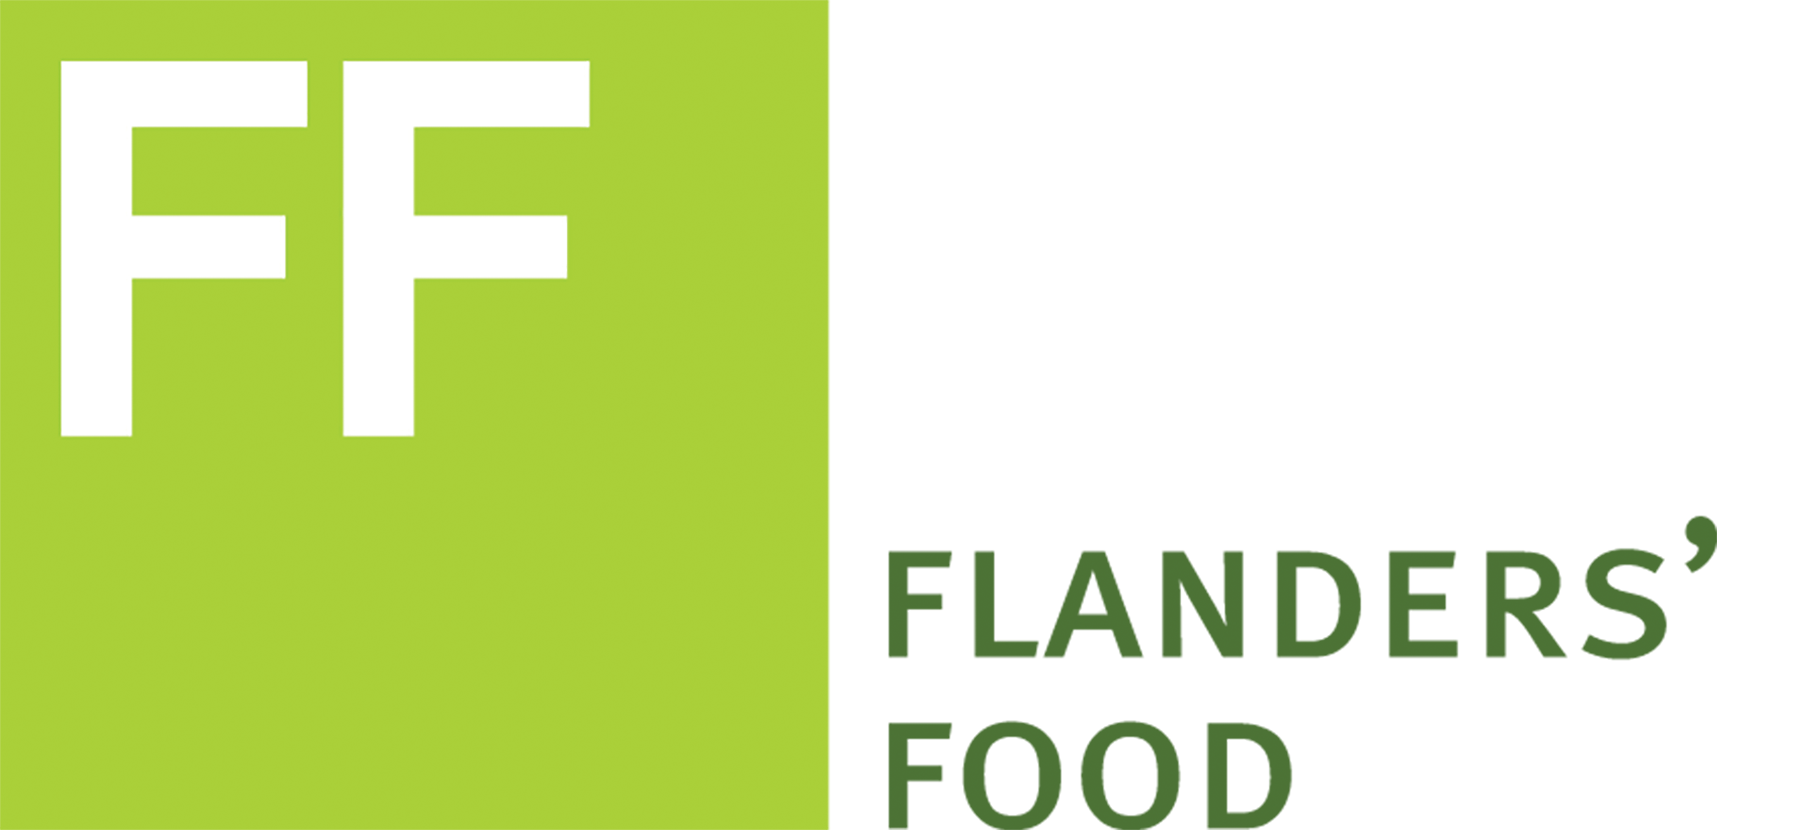 Flanders' FOOD logo